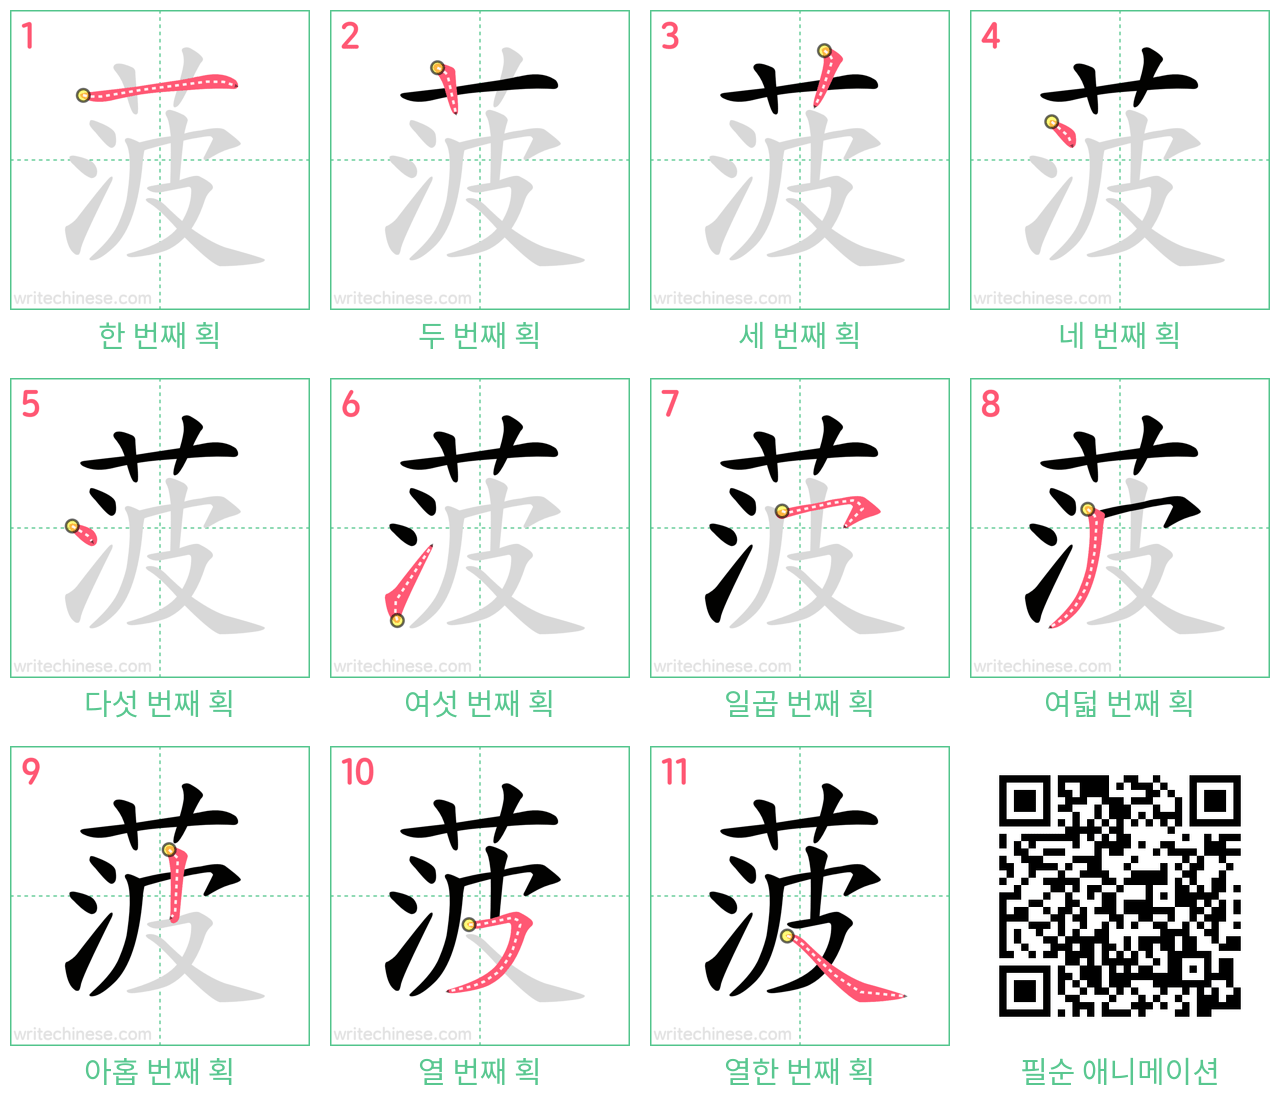 菠 step-by-step stroke order diagrams